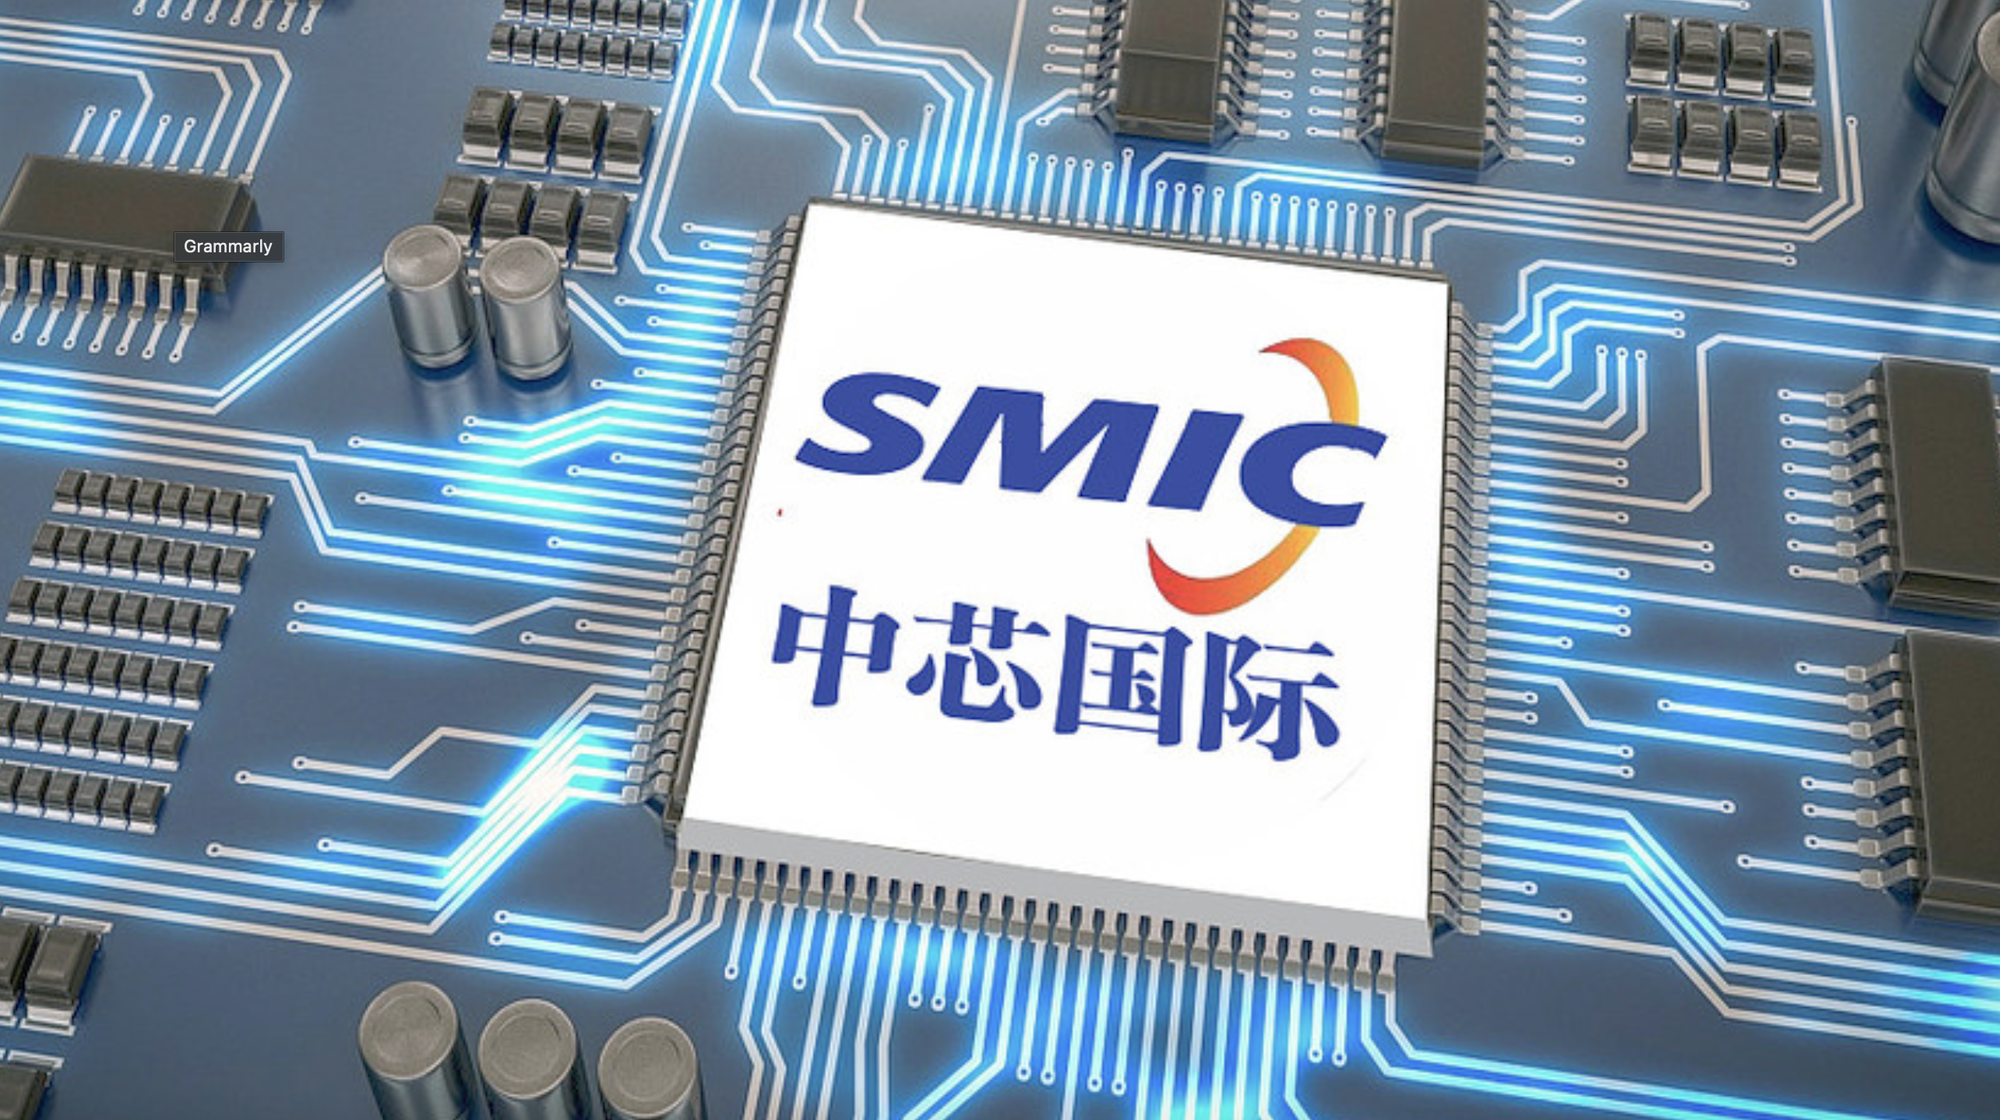 Hóa ra cách thức SMIC sản xuất chip 7nm cho Huawei không hề bí ẩn, Intel và TSMC đều đã làm được từ lâu - Ảnh 1.